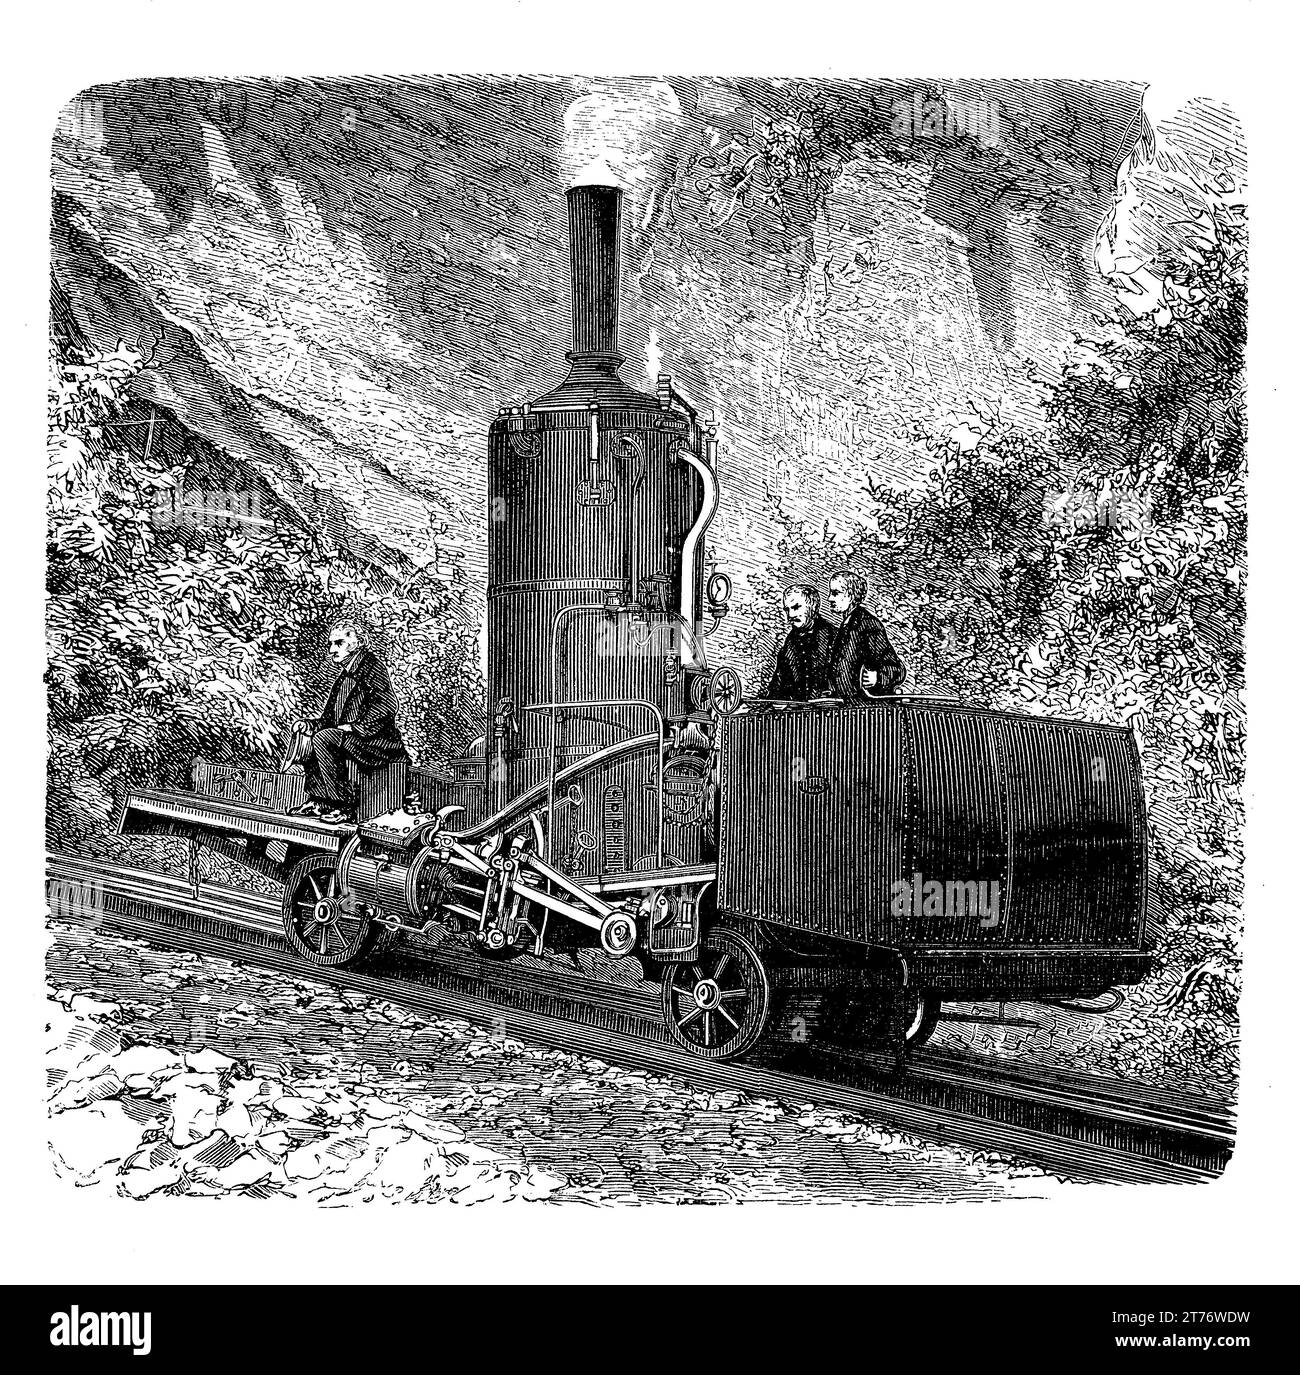 La ferrovia Rigi fu aperta nel 1873 per raggiungere la vetta del monte Rigi in Svizzera, con una locomotiva con caldaia verticale che lavorava su un sistema di scaffalature dentate incastonate tra i binari ferroviari che si incastrano con ruote dentate montate sotto la locomotiva Foto Stock